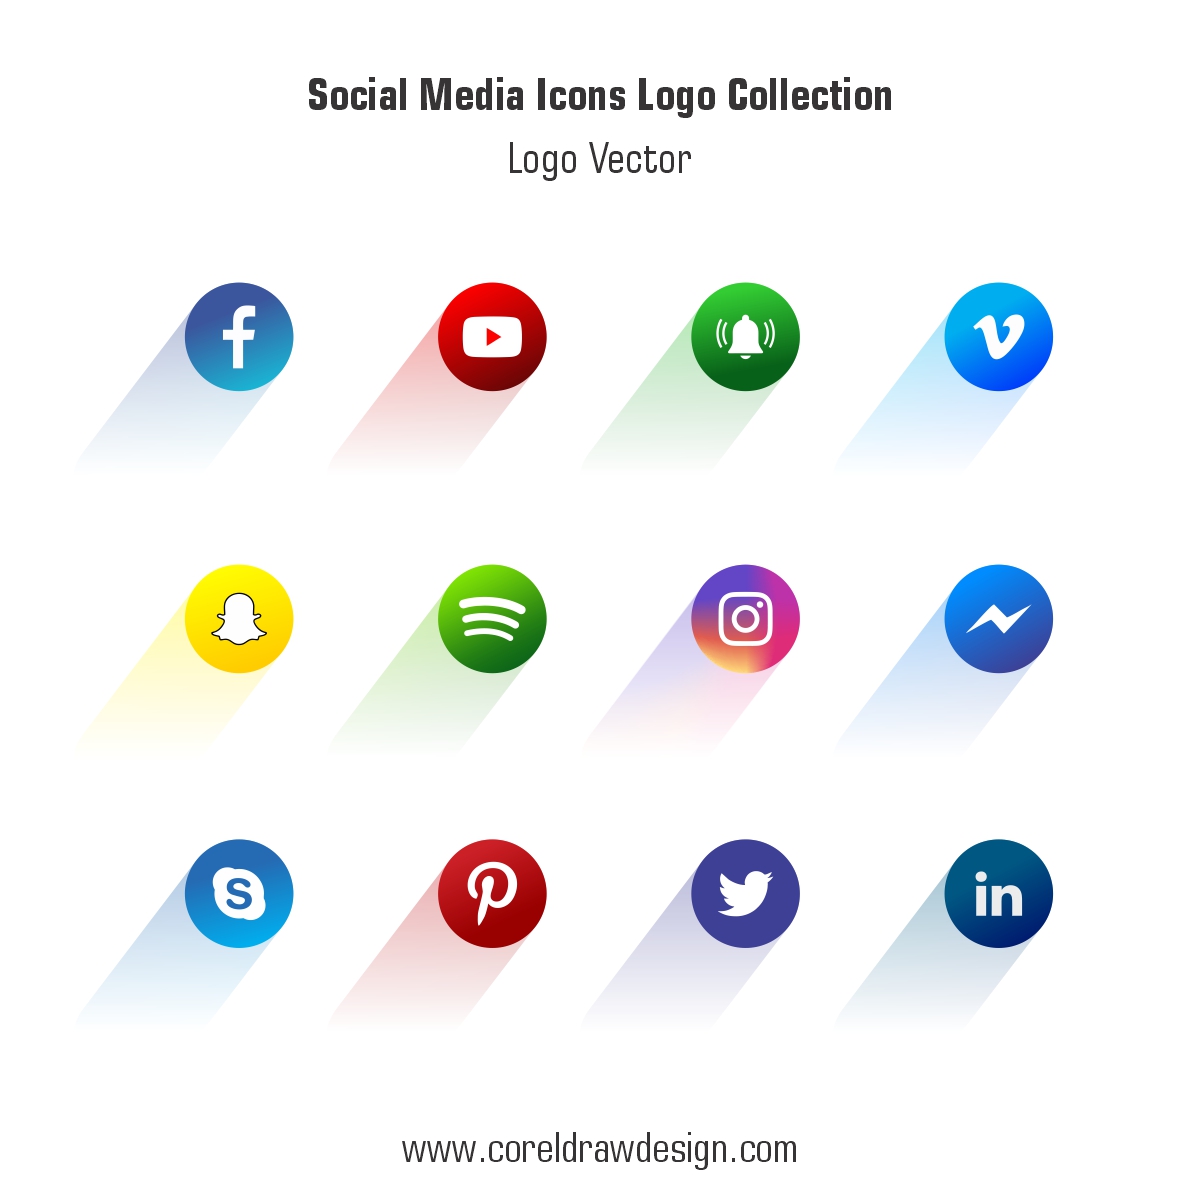 Social Media Icons Logo Collection